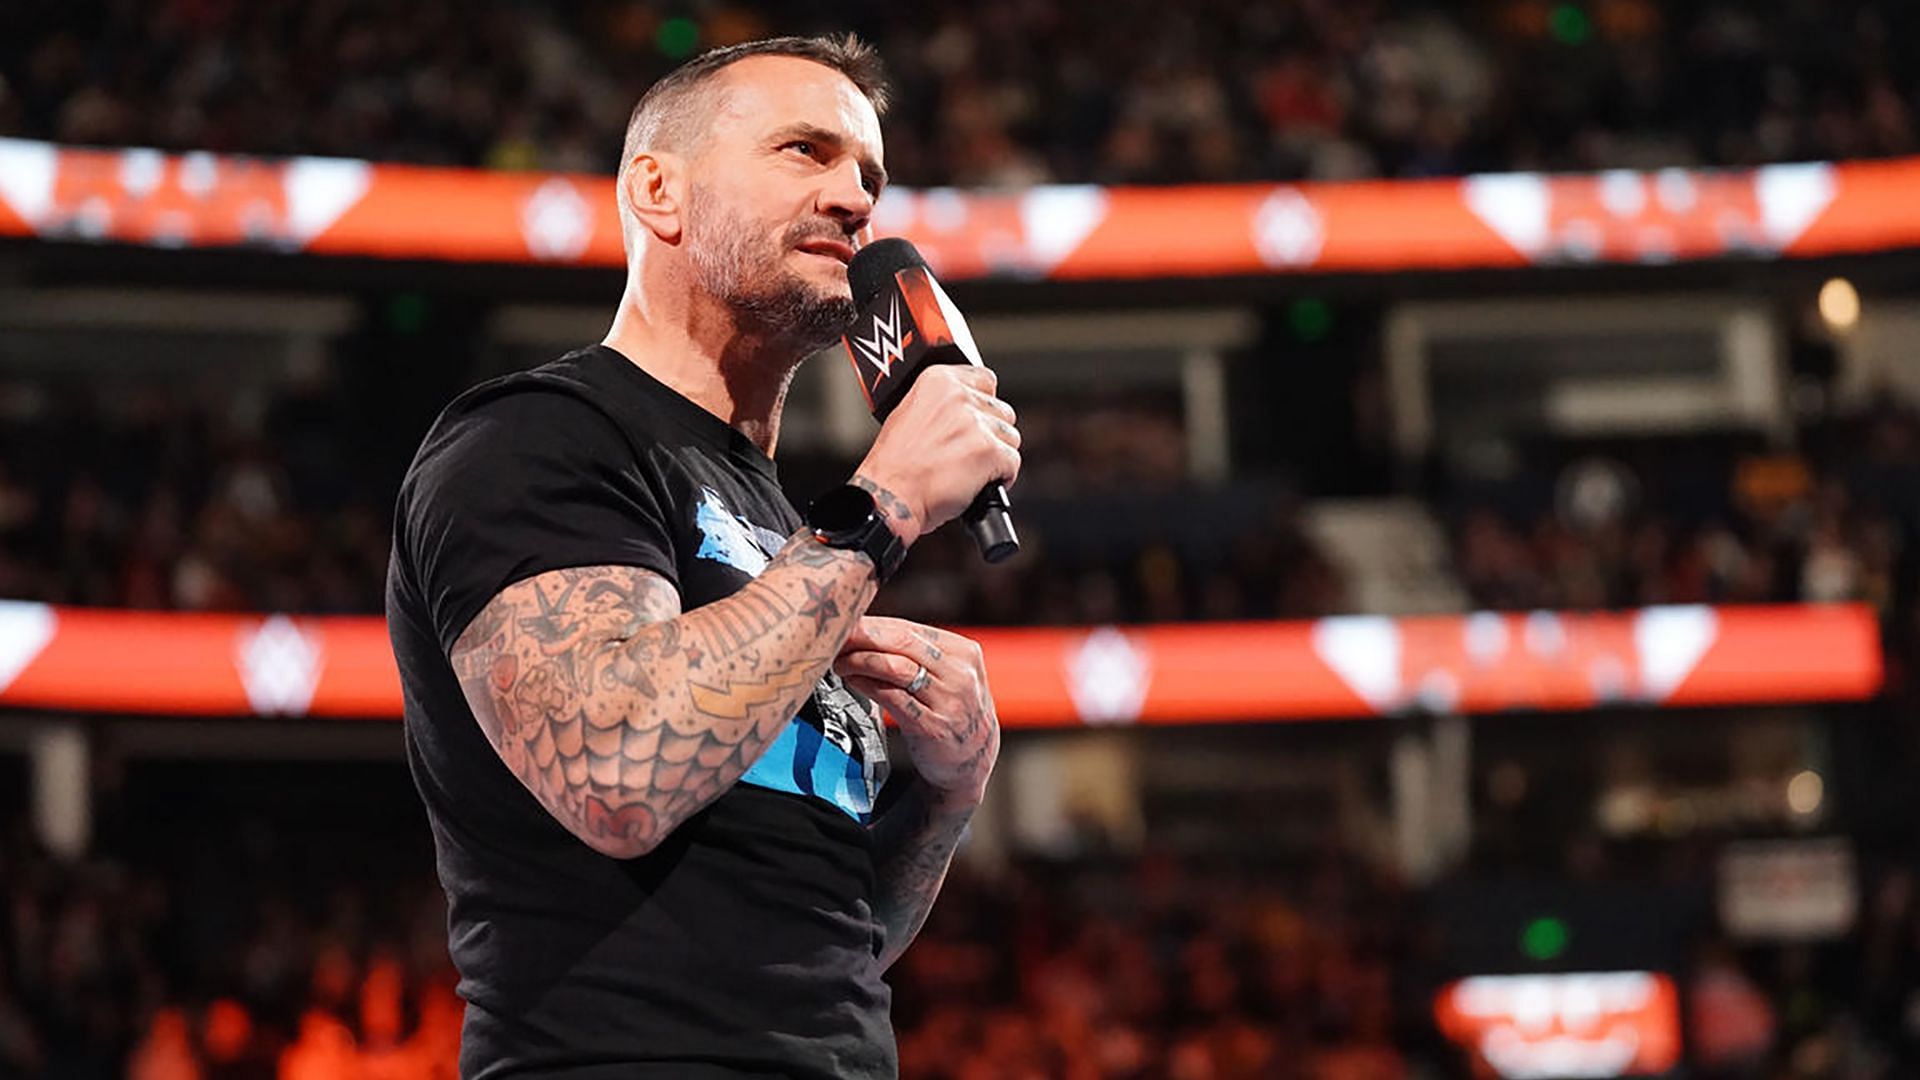 CM Punk speaks to fans on WWE RAW